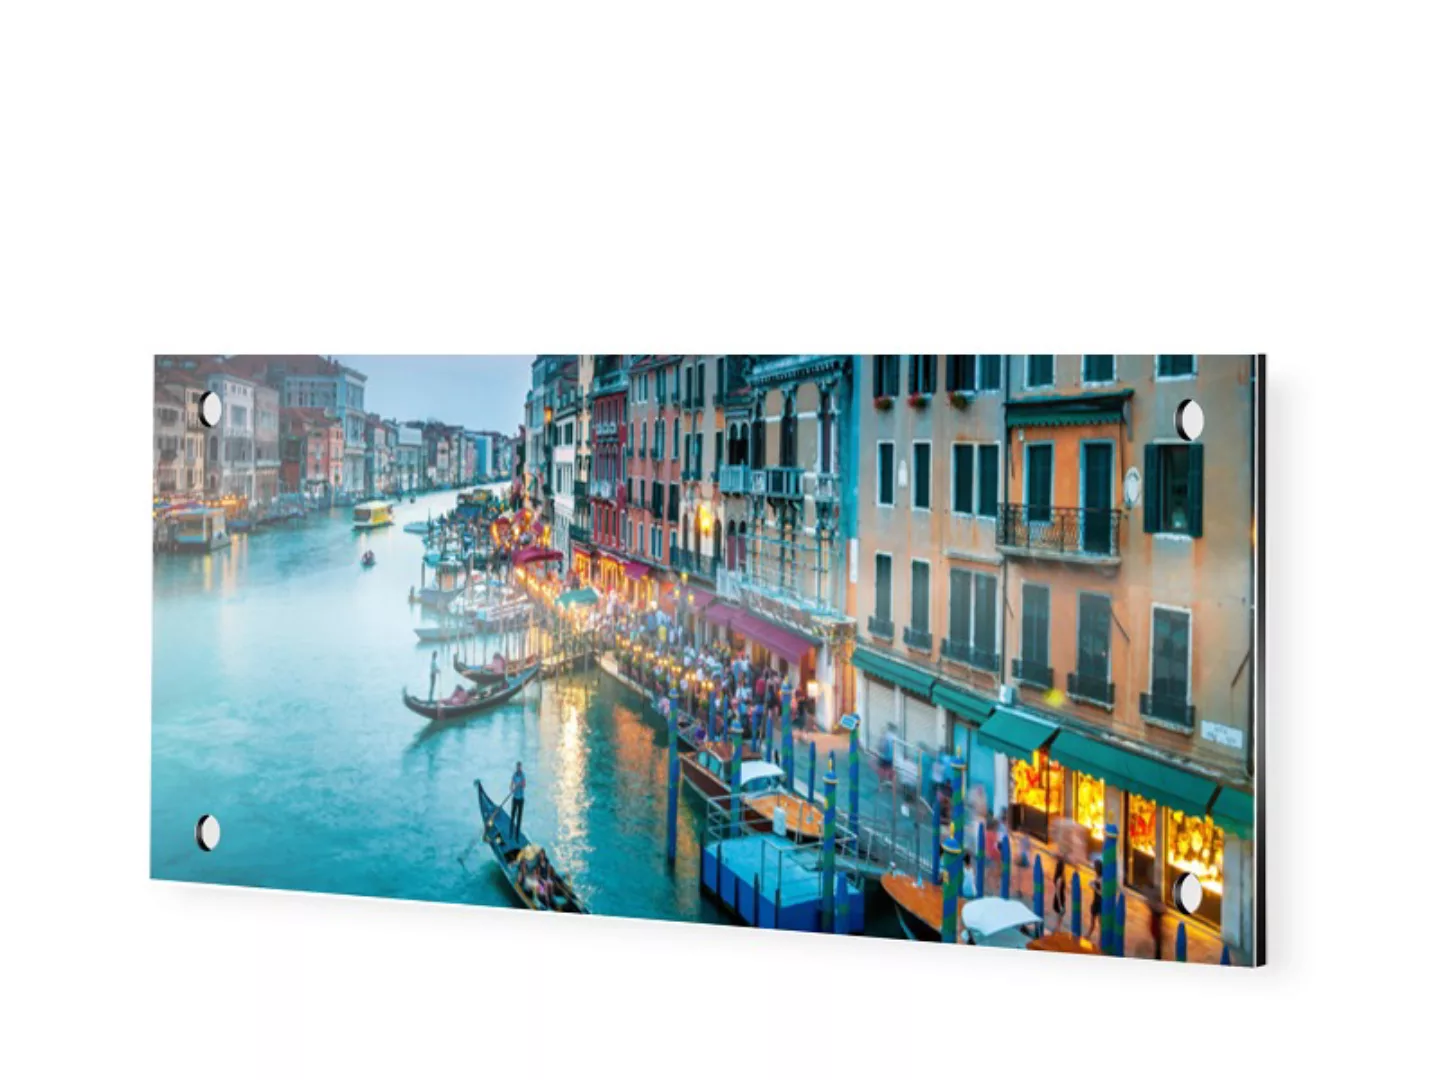 Foto auf Alu Dibond im Format 80 x 40 cm als Panorama im Format 80 x 40 cm günstig online kaufen